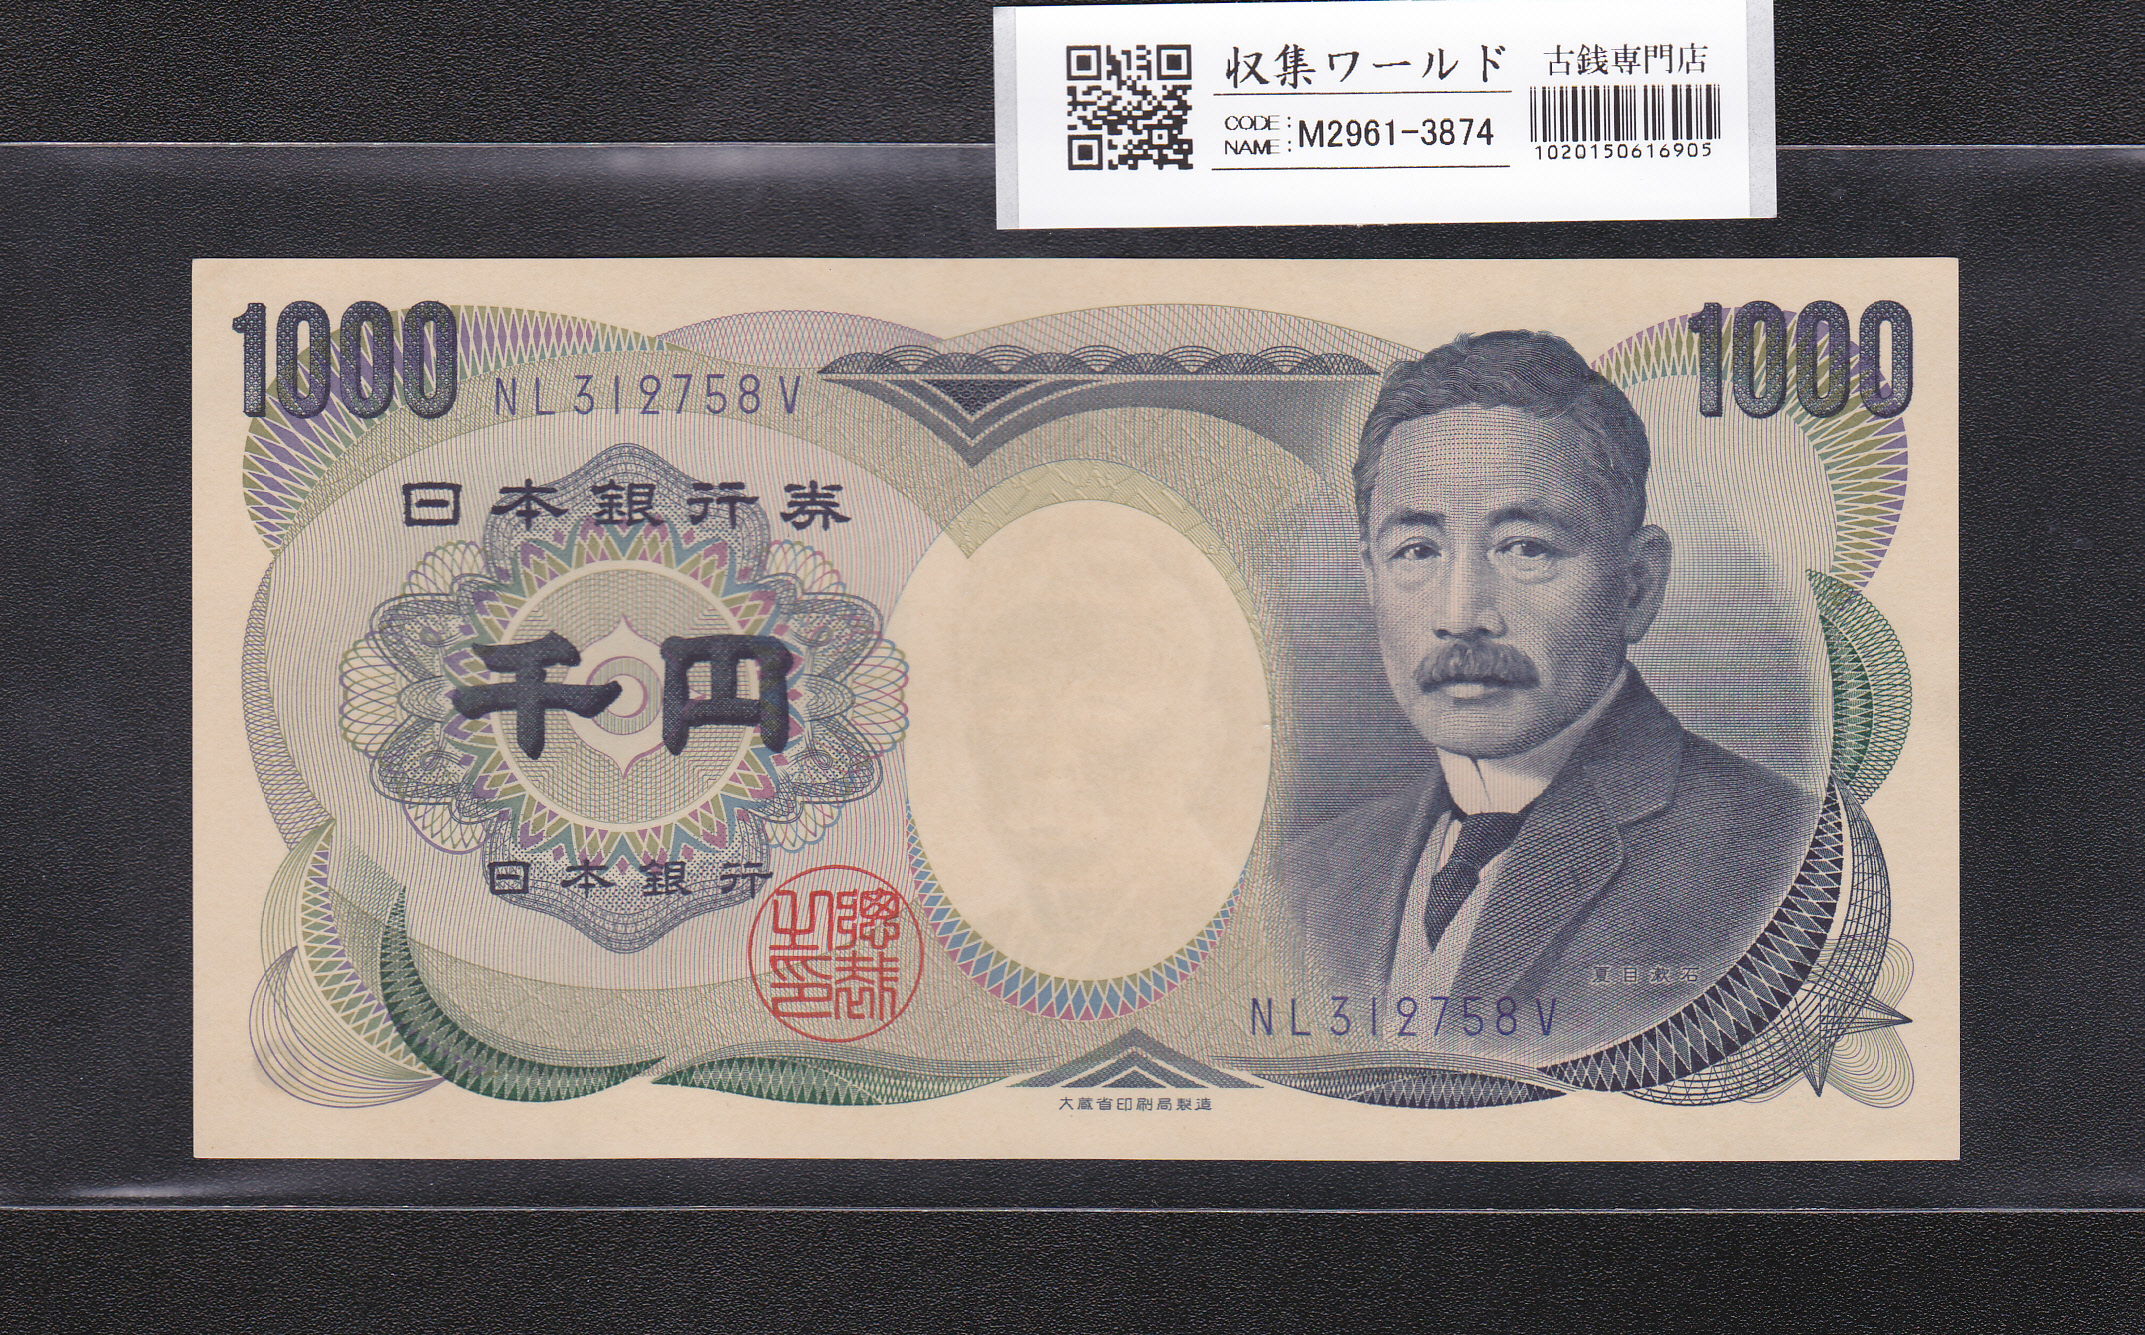 夏目漱石 1000円札/大蔵省銘 1990年 青色 後期/2桁 NL312758V 未使用